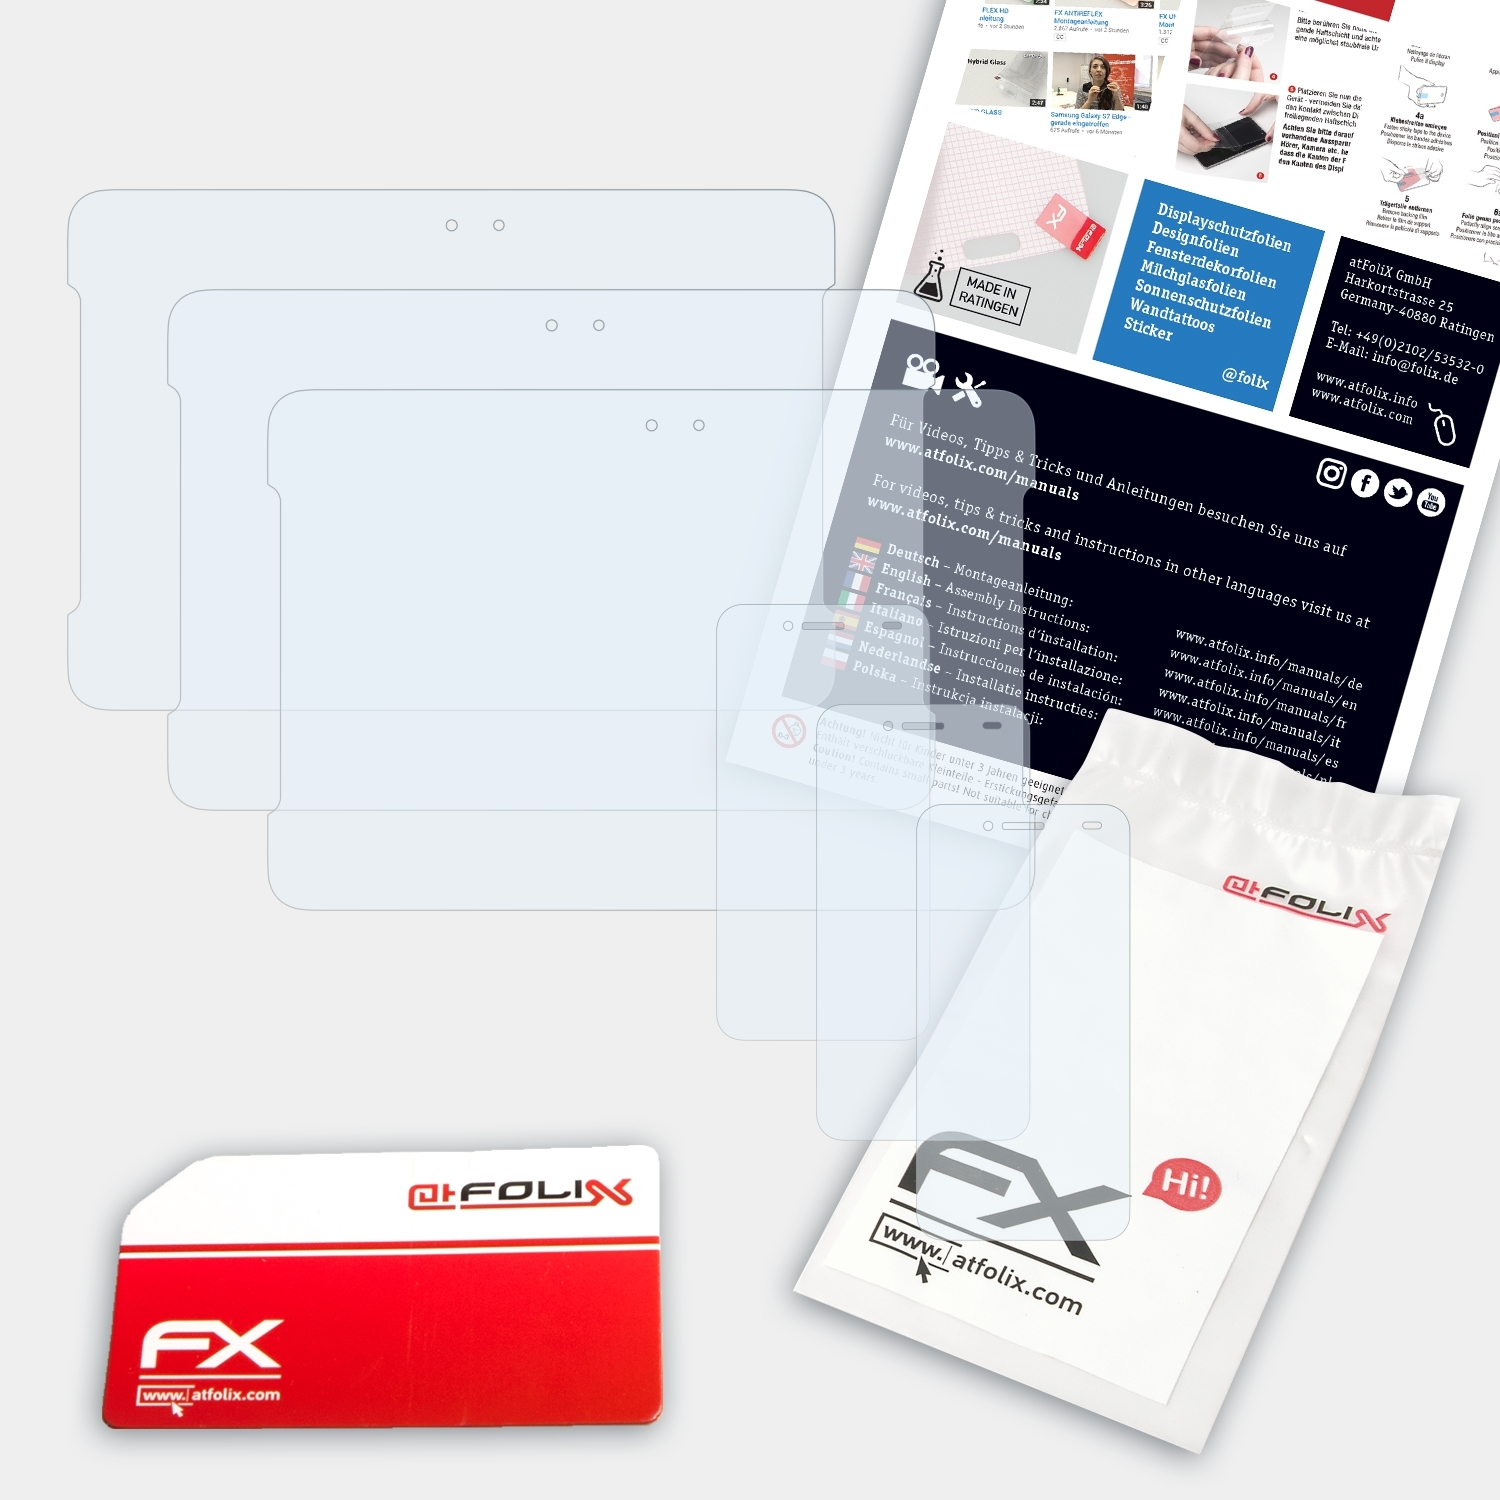 3x Asus ATFOLIX FX-Clear PadFone S) Displayschutz(für